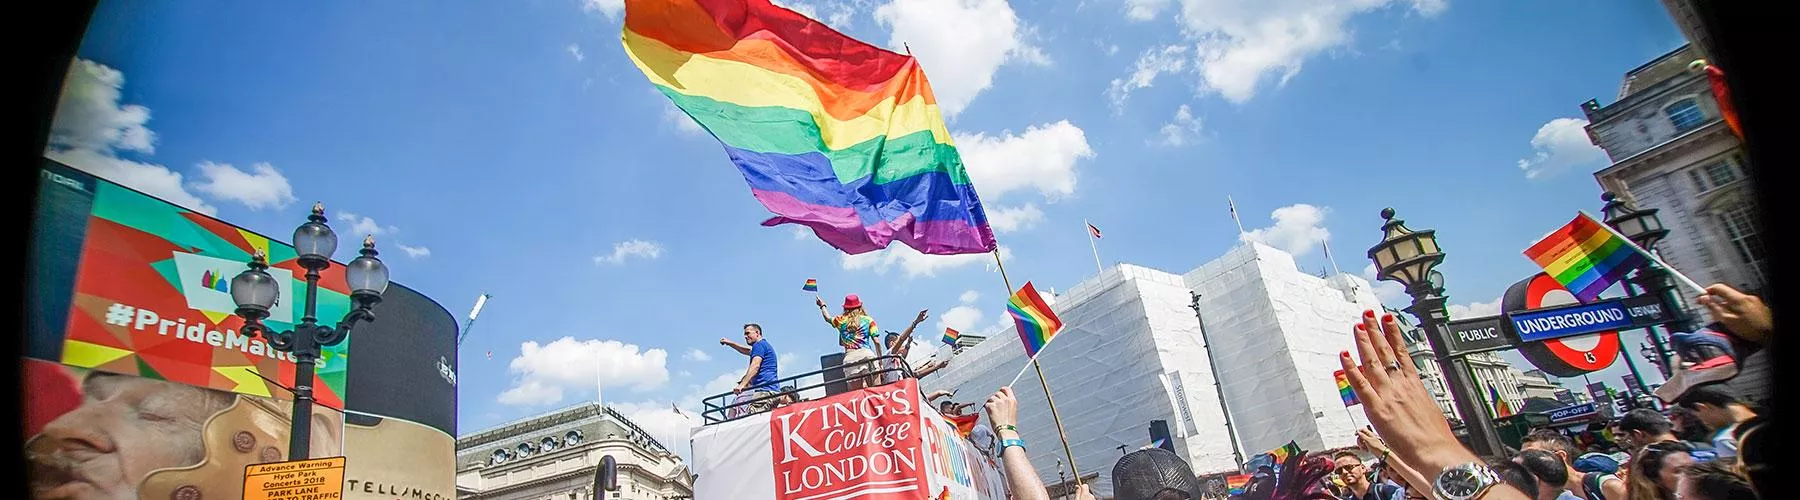 King's at Pride 2018